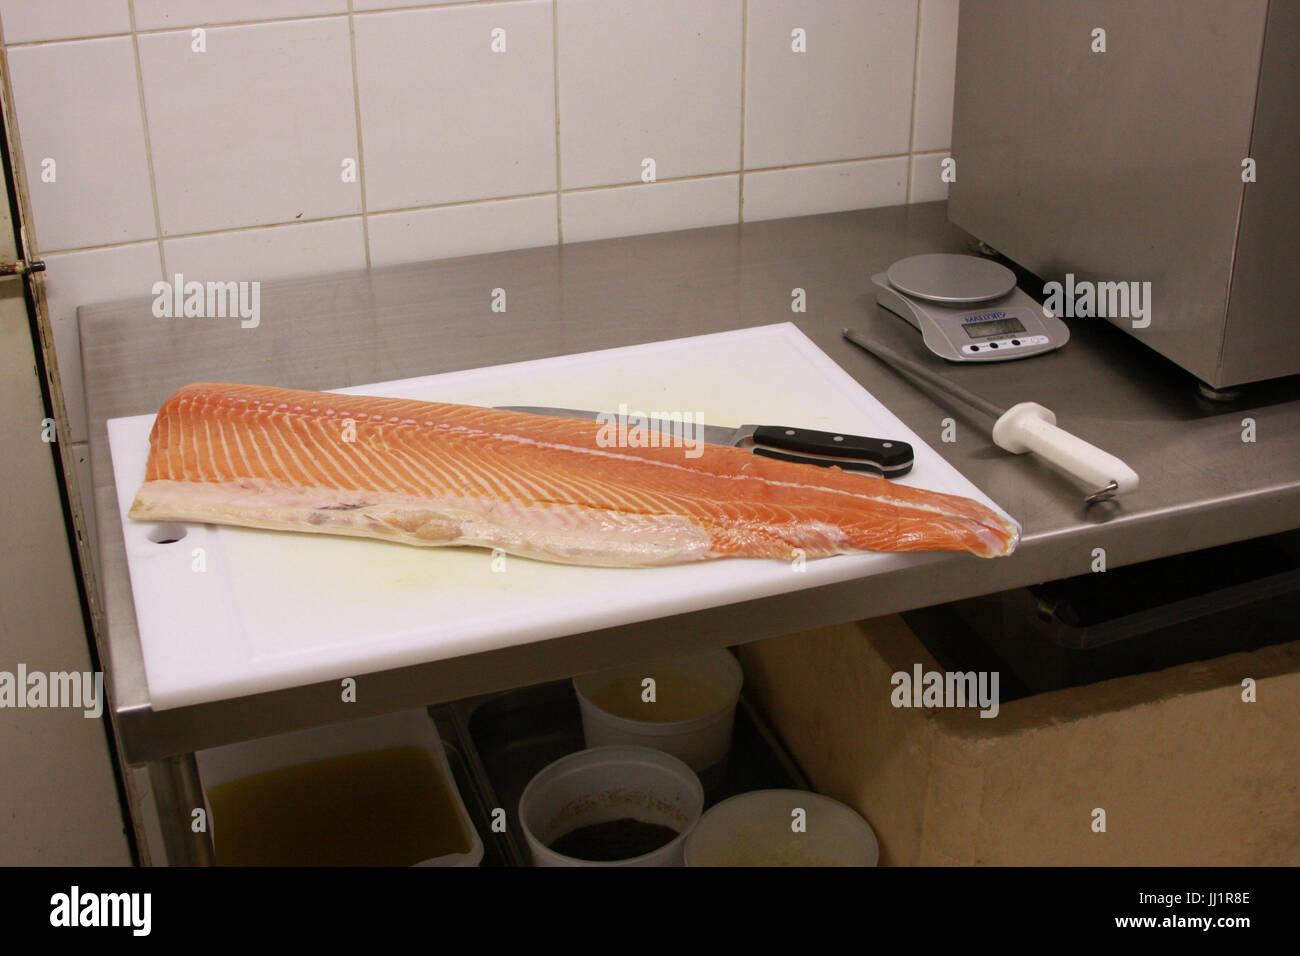 Salmon, Fish, São Paulo, Brazil Stock Photo